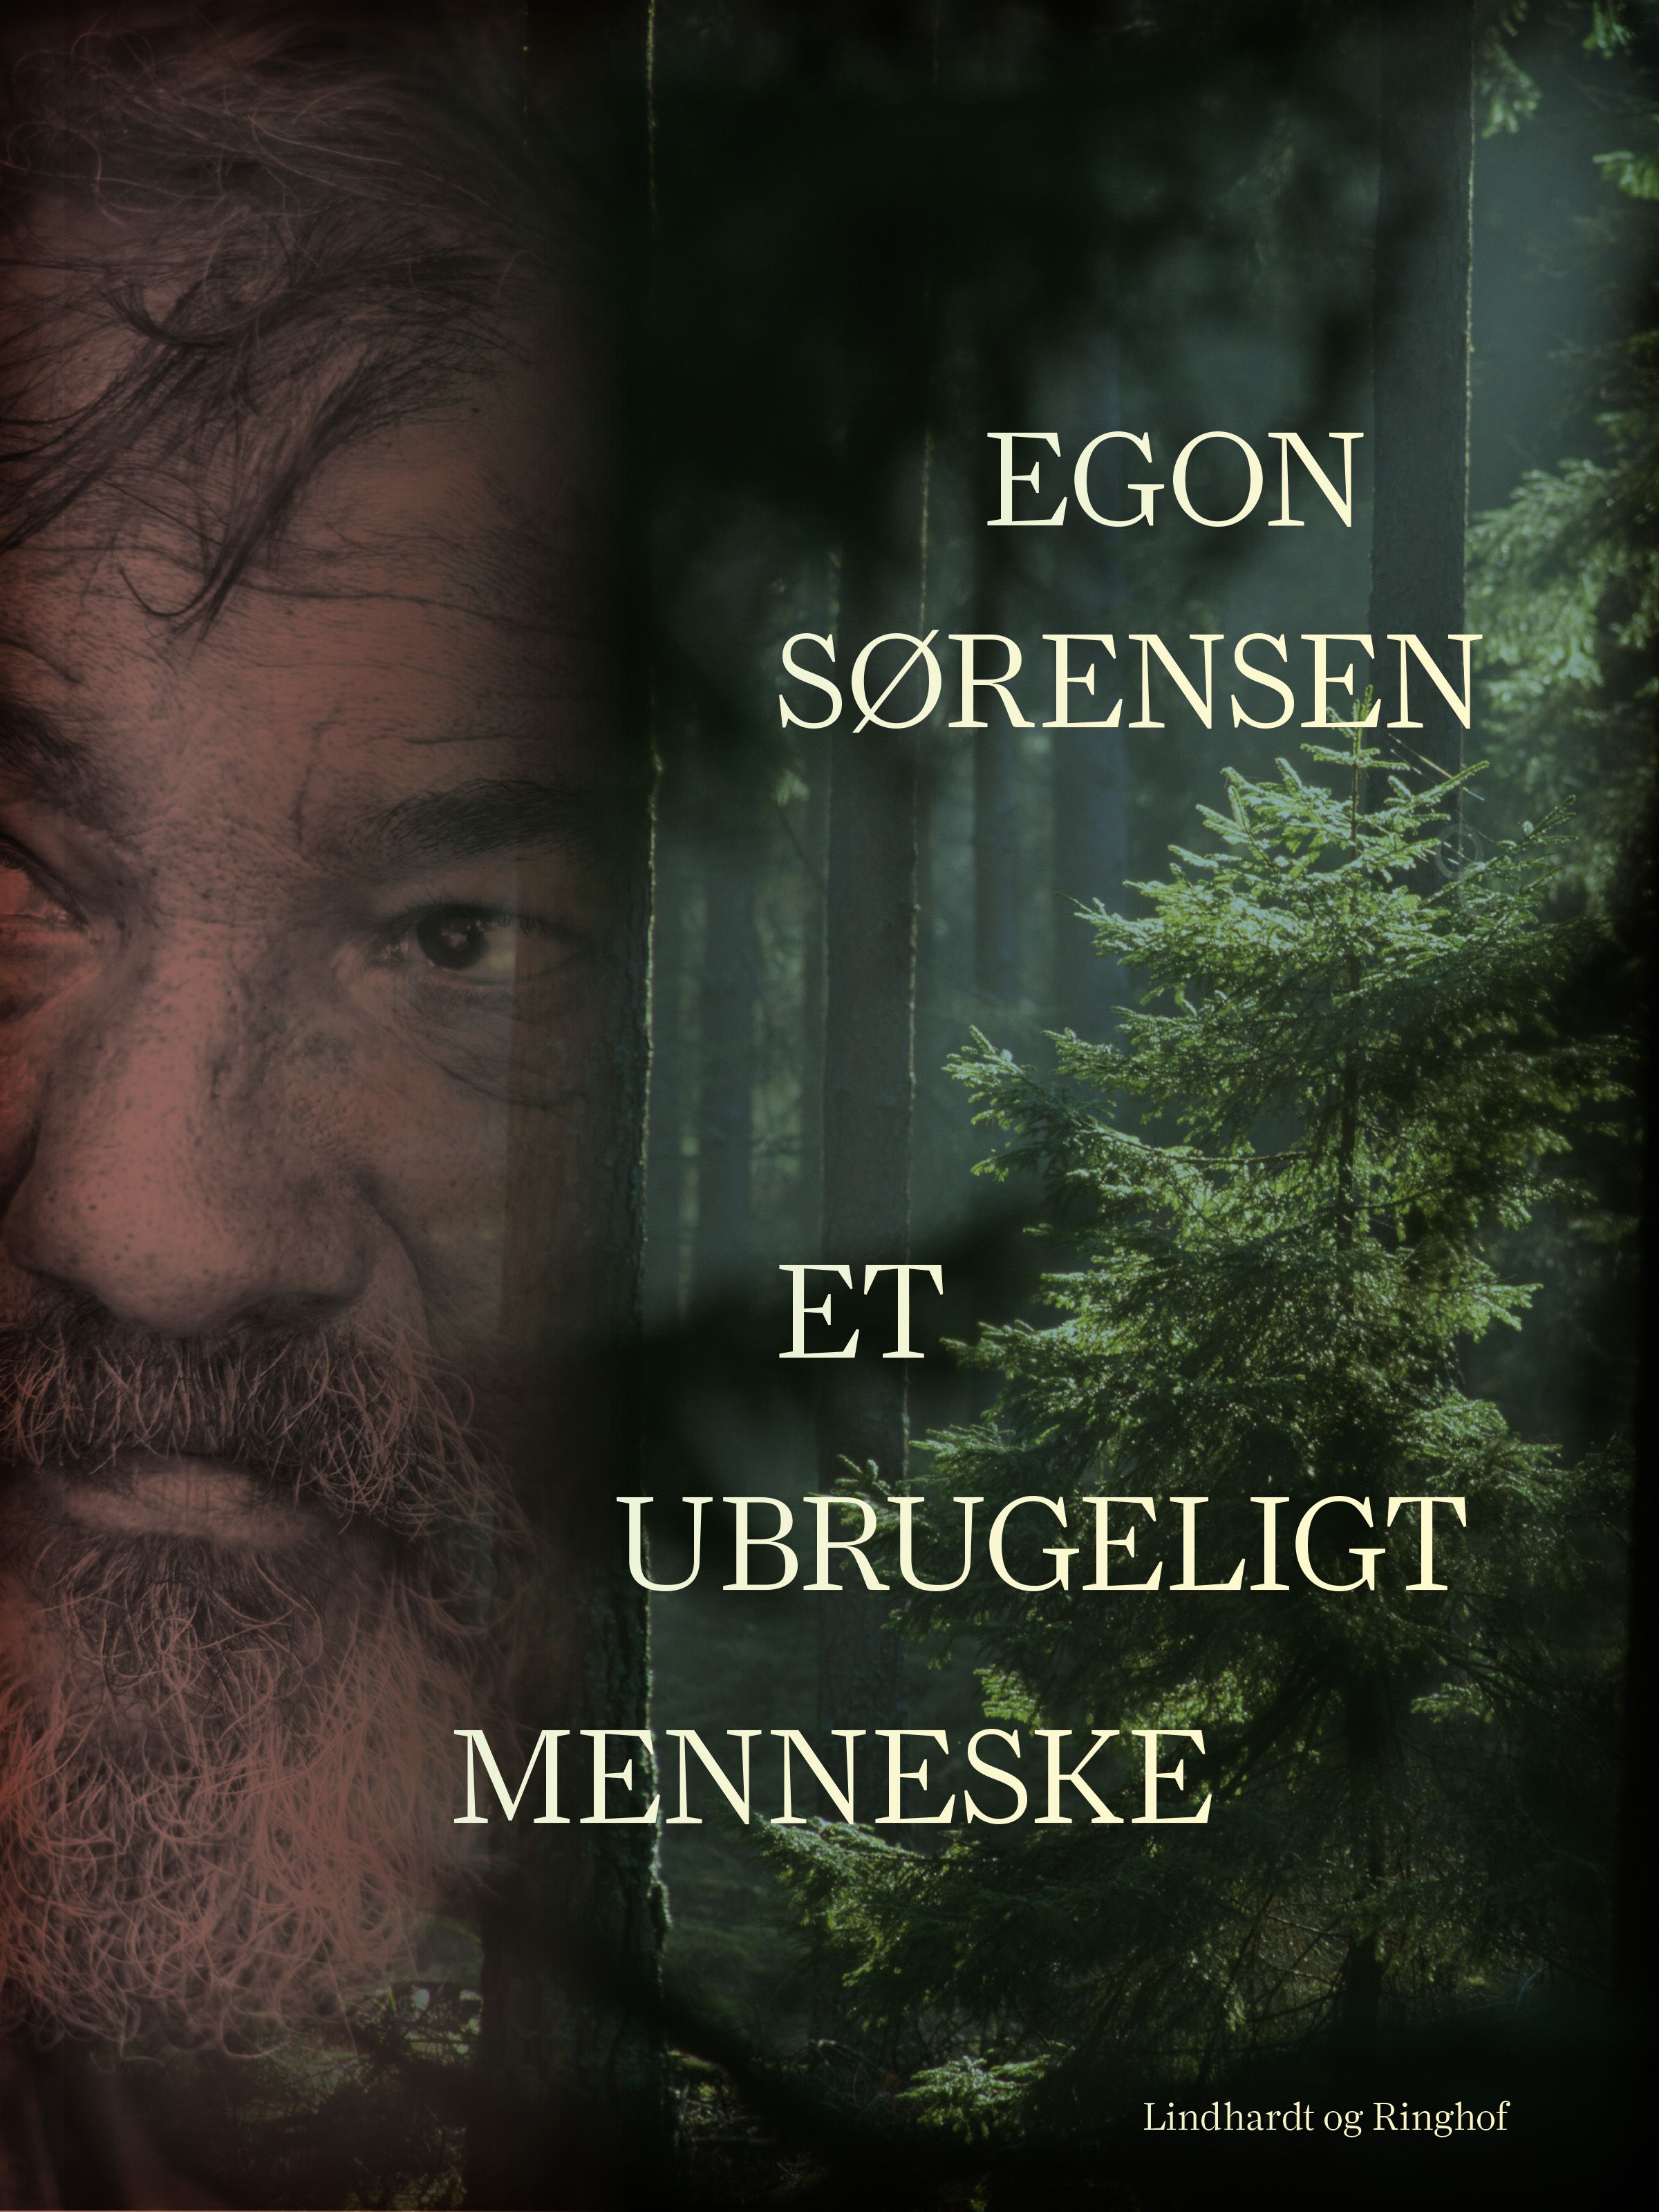 Et ubrugeligt menneske, e-bok av Egon Sørensen